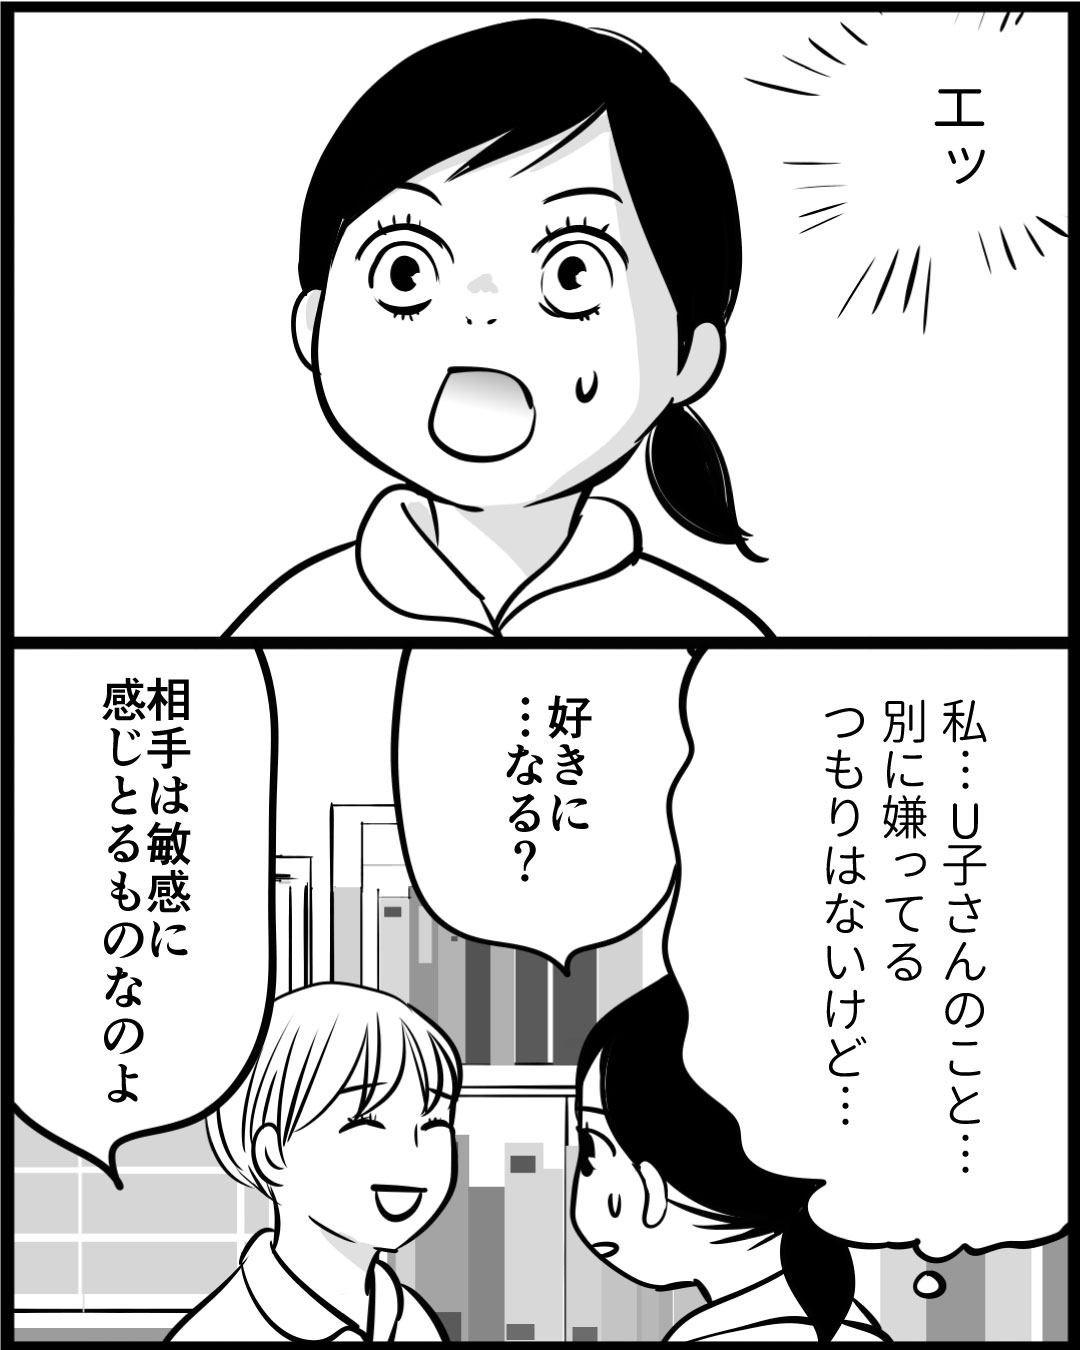 漫画「100年ぶりに入浴したU子さん」14